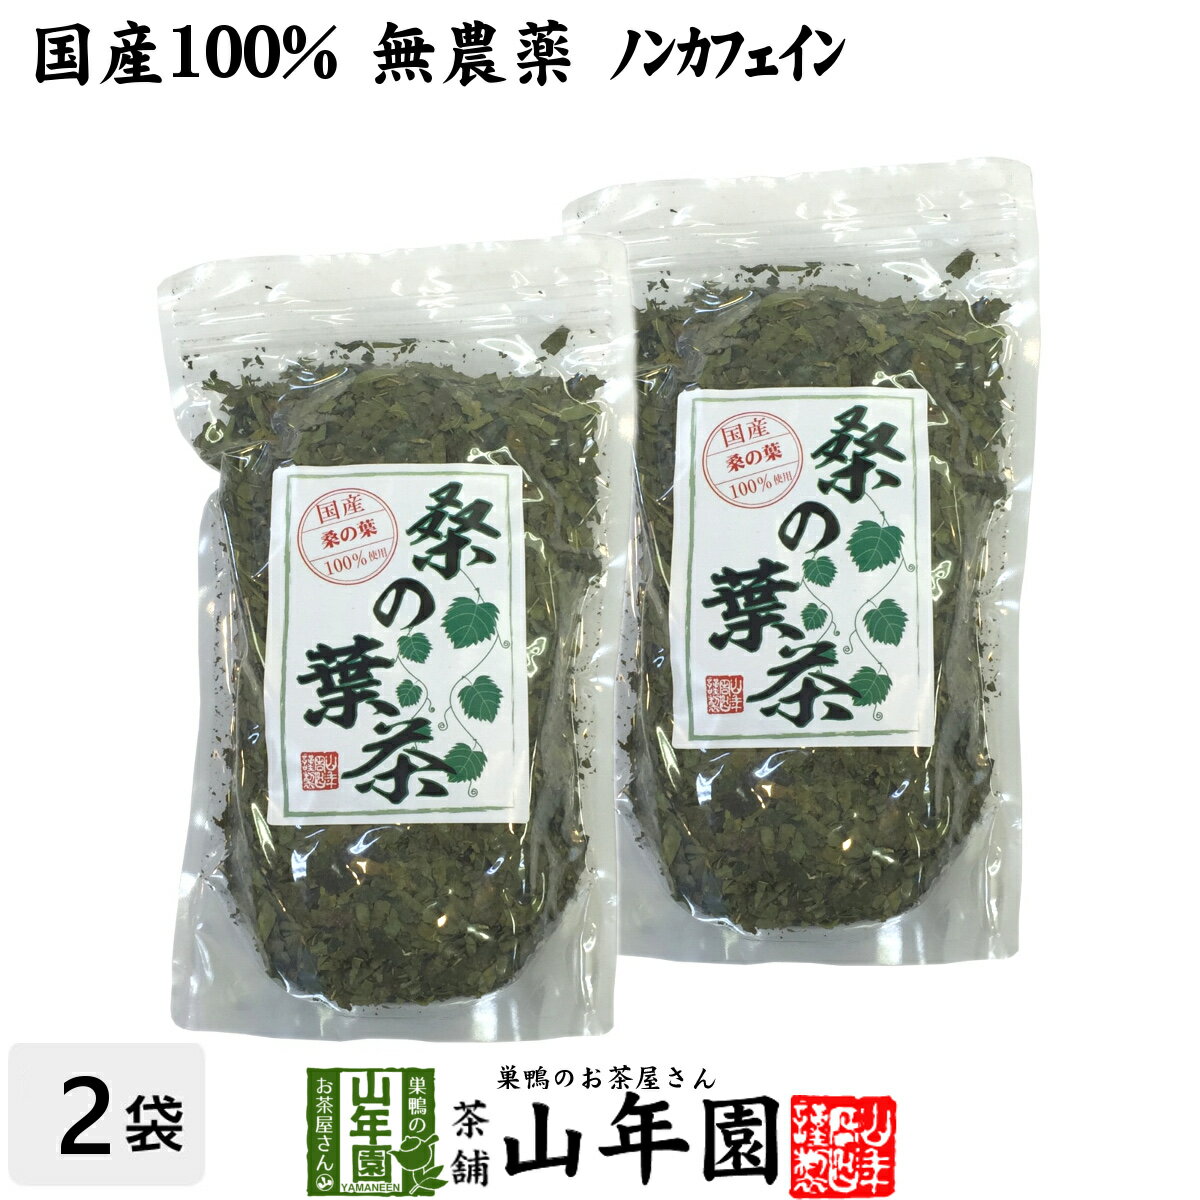 【国産 100%】桑の葉茶 100g×2袋セット 無農薬 ノ